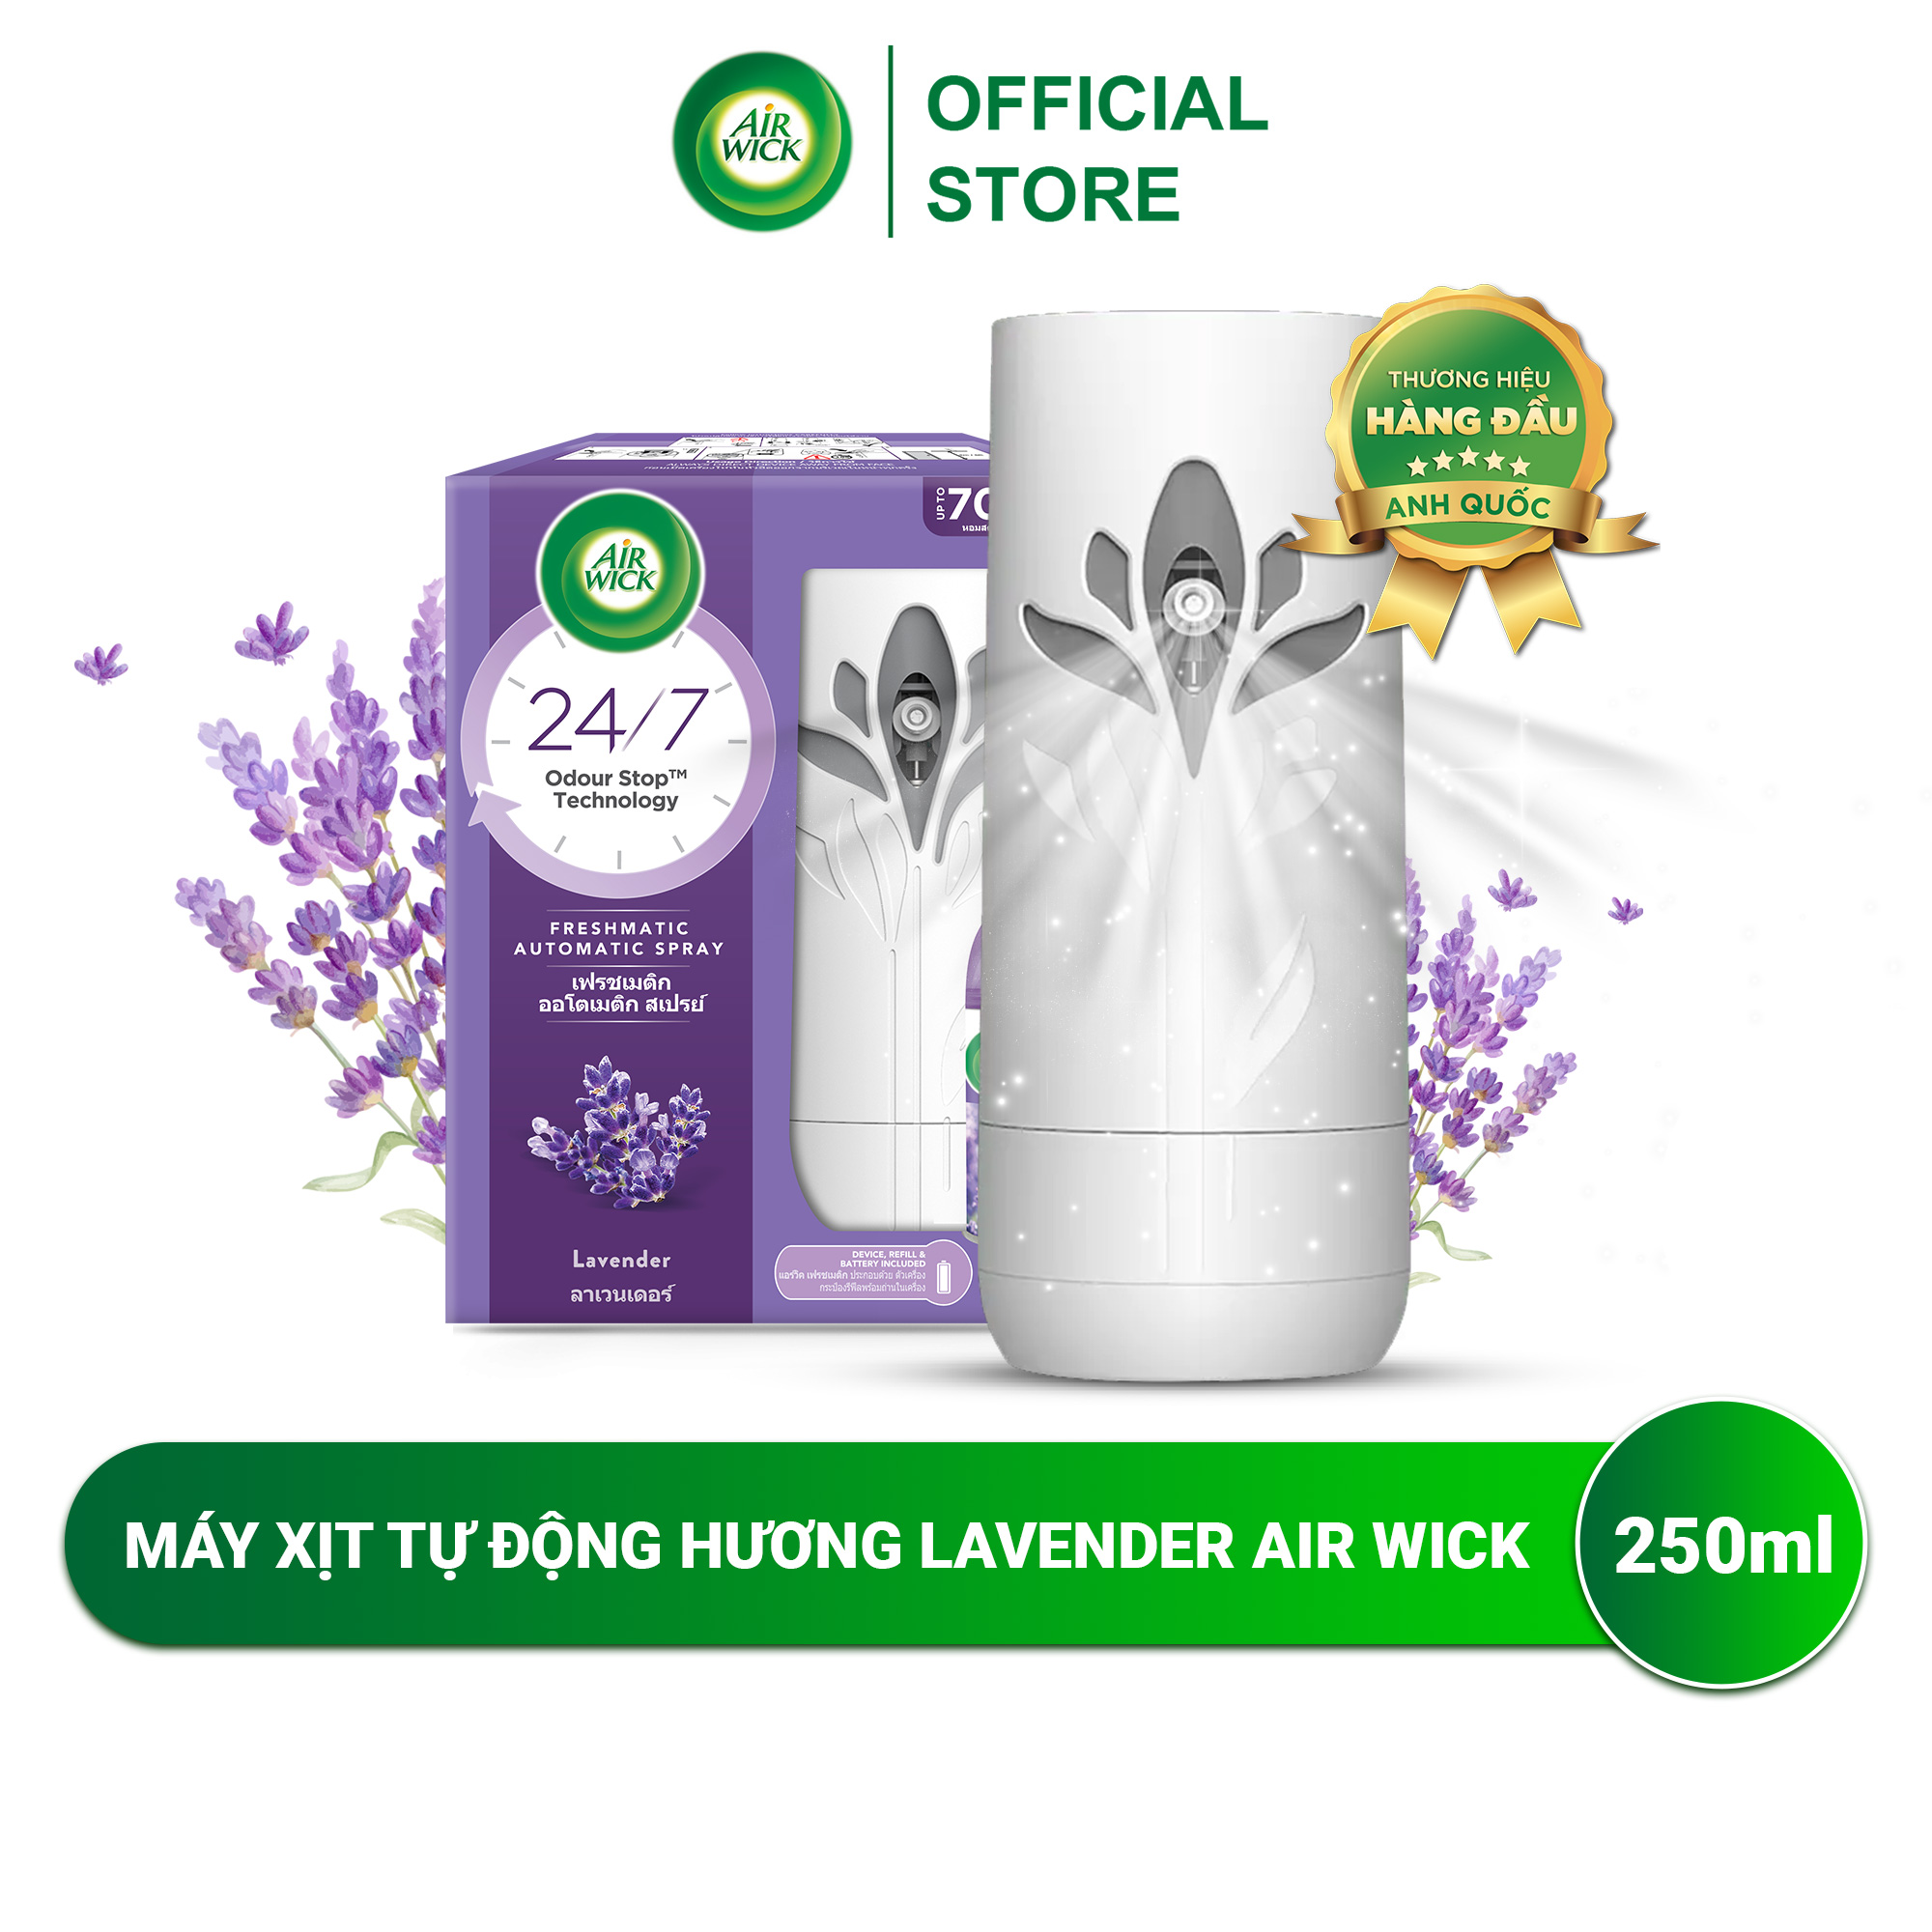 Máy xịt thơm phòng tự động AIRWICK, Anh Quốc, công nghệ Odour Stop chống ẩm mốc, ngát hương 24/7, siêu tiết kiệm